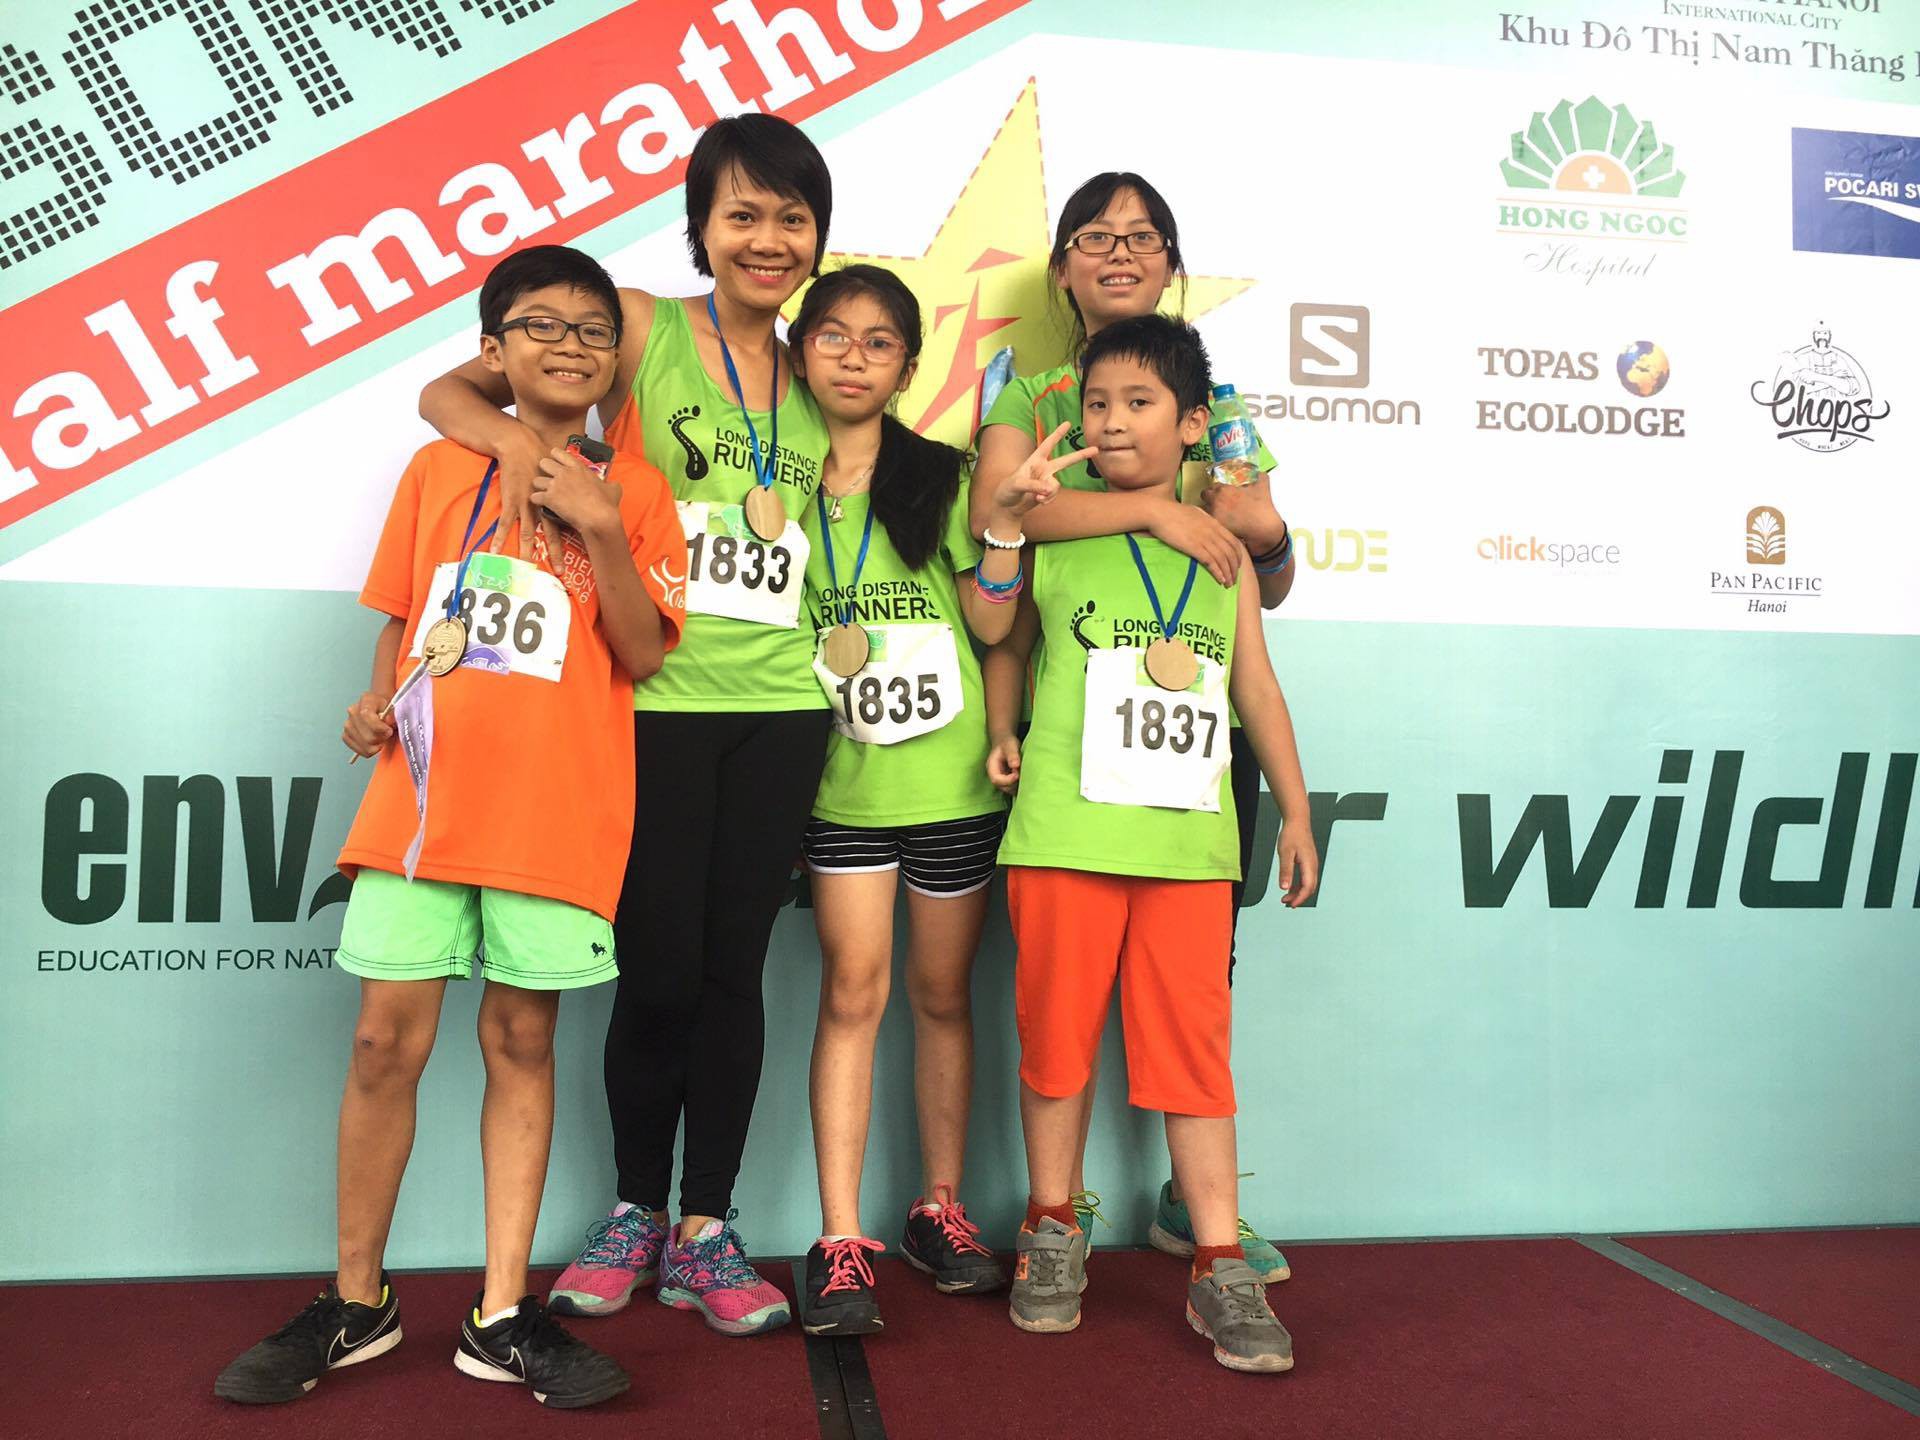 VĐV Lê Thanh Phương ''kéo'' 4 đứa con của mình chạy các giải Longbien Marathon, Halong Marathon và Song Hong Half Marathon